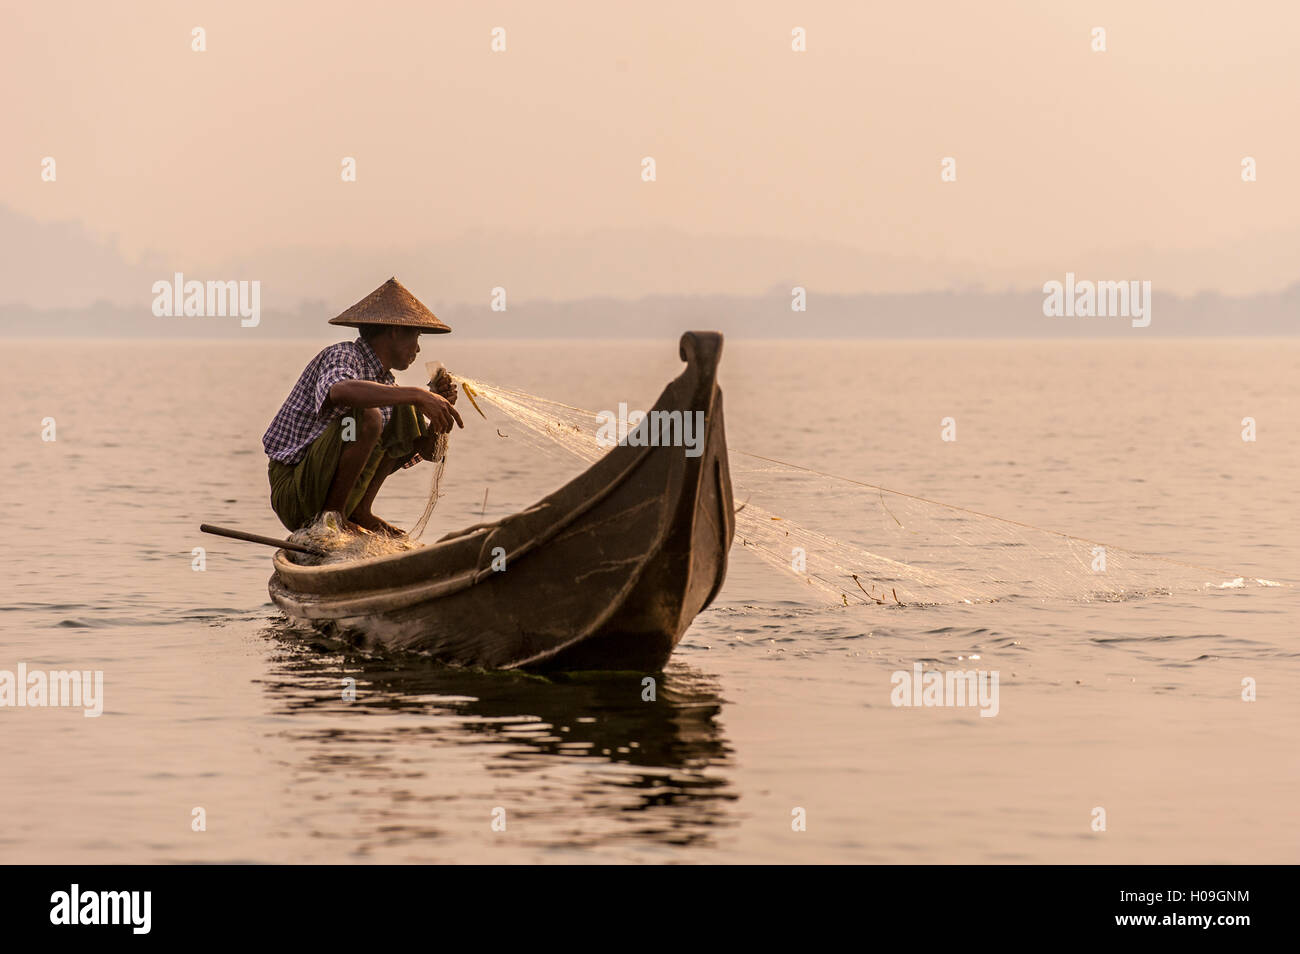 A fisherman pulls in his net on Indawgyi Lake in Kachin State, Myanmar (Burma), Asia Stock Photo